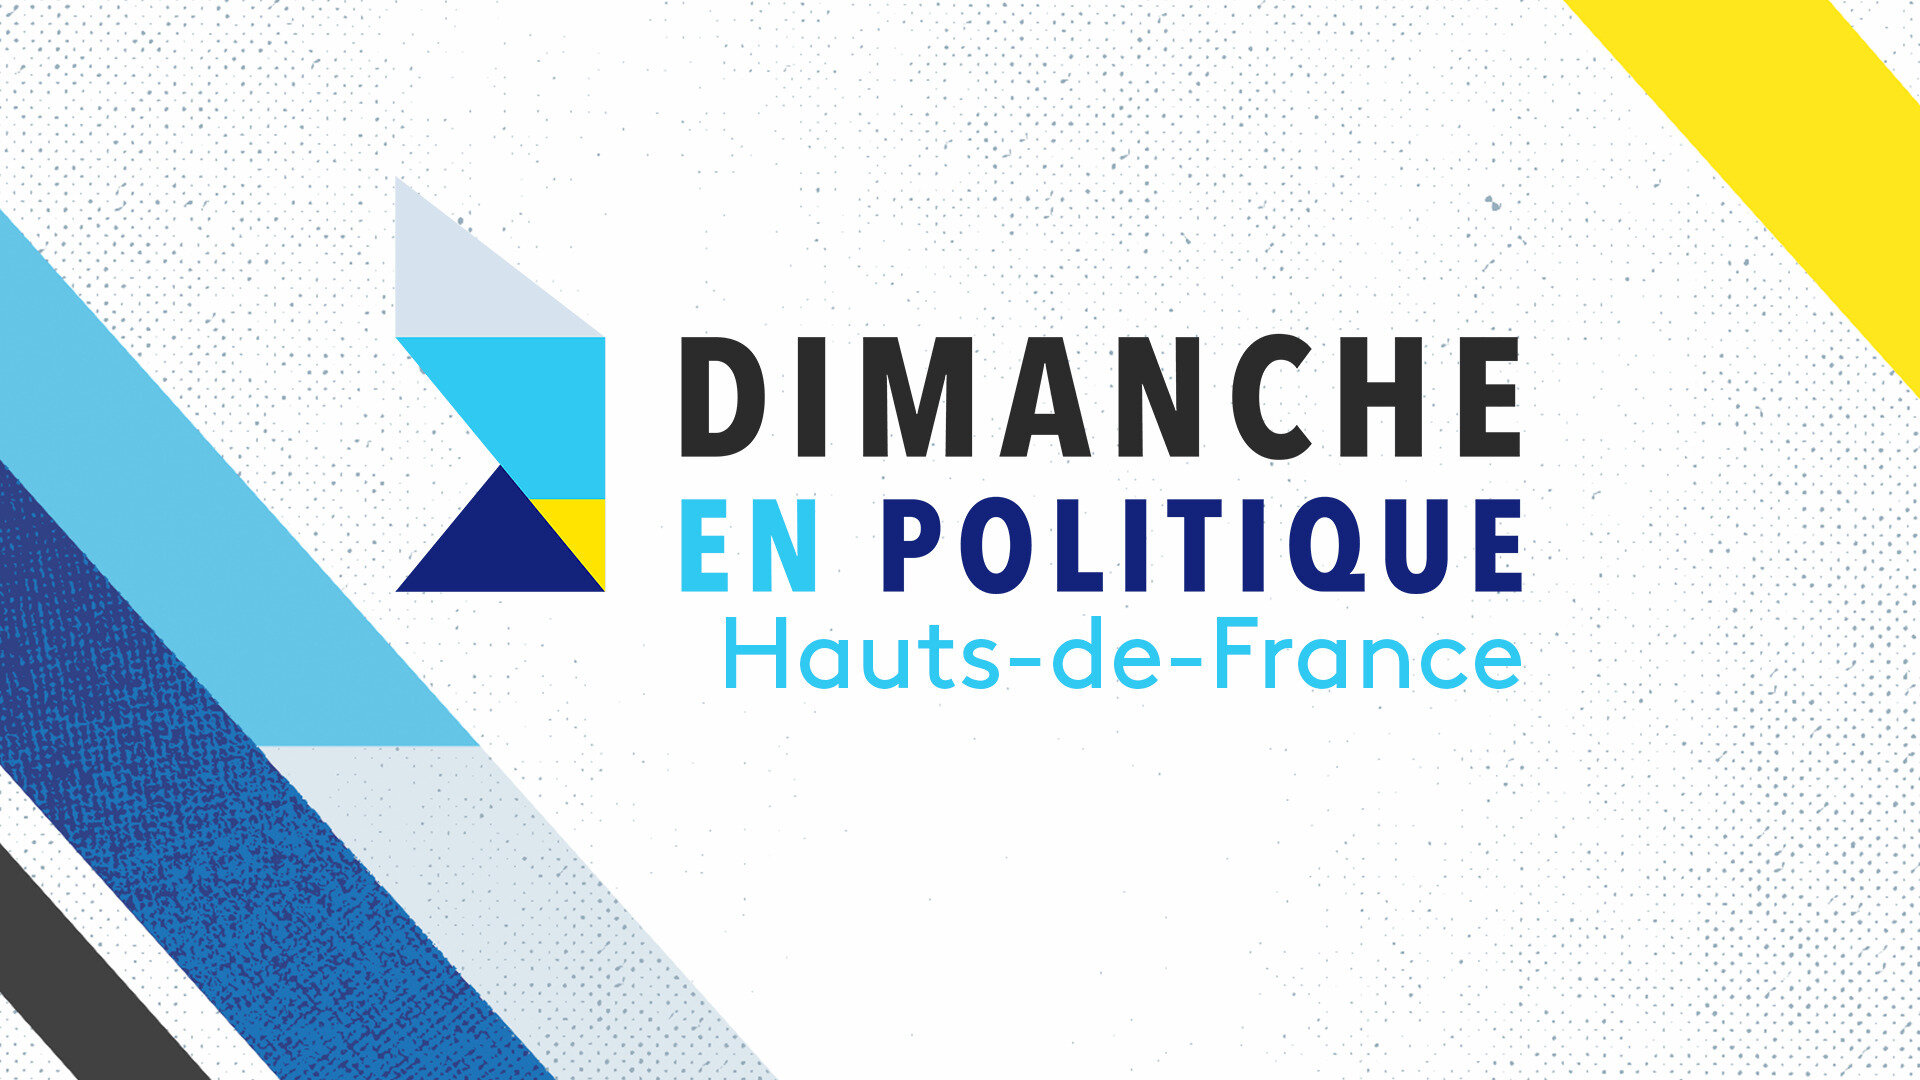 Dimanche en politique - Hauts-de-France : Senior, un métier d'avenir